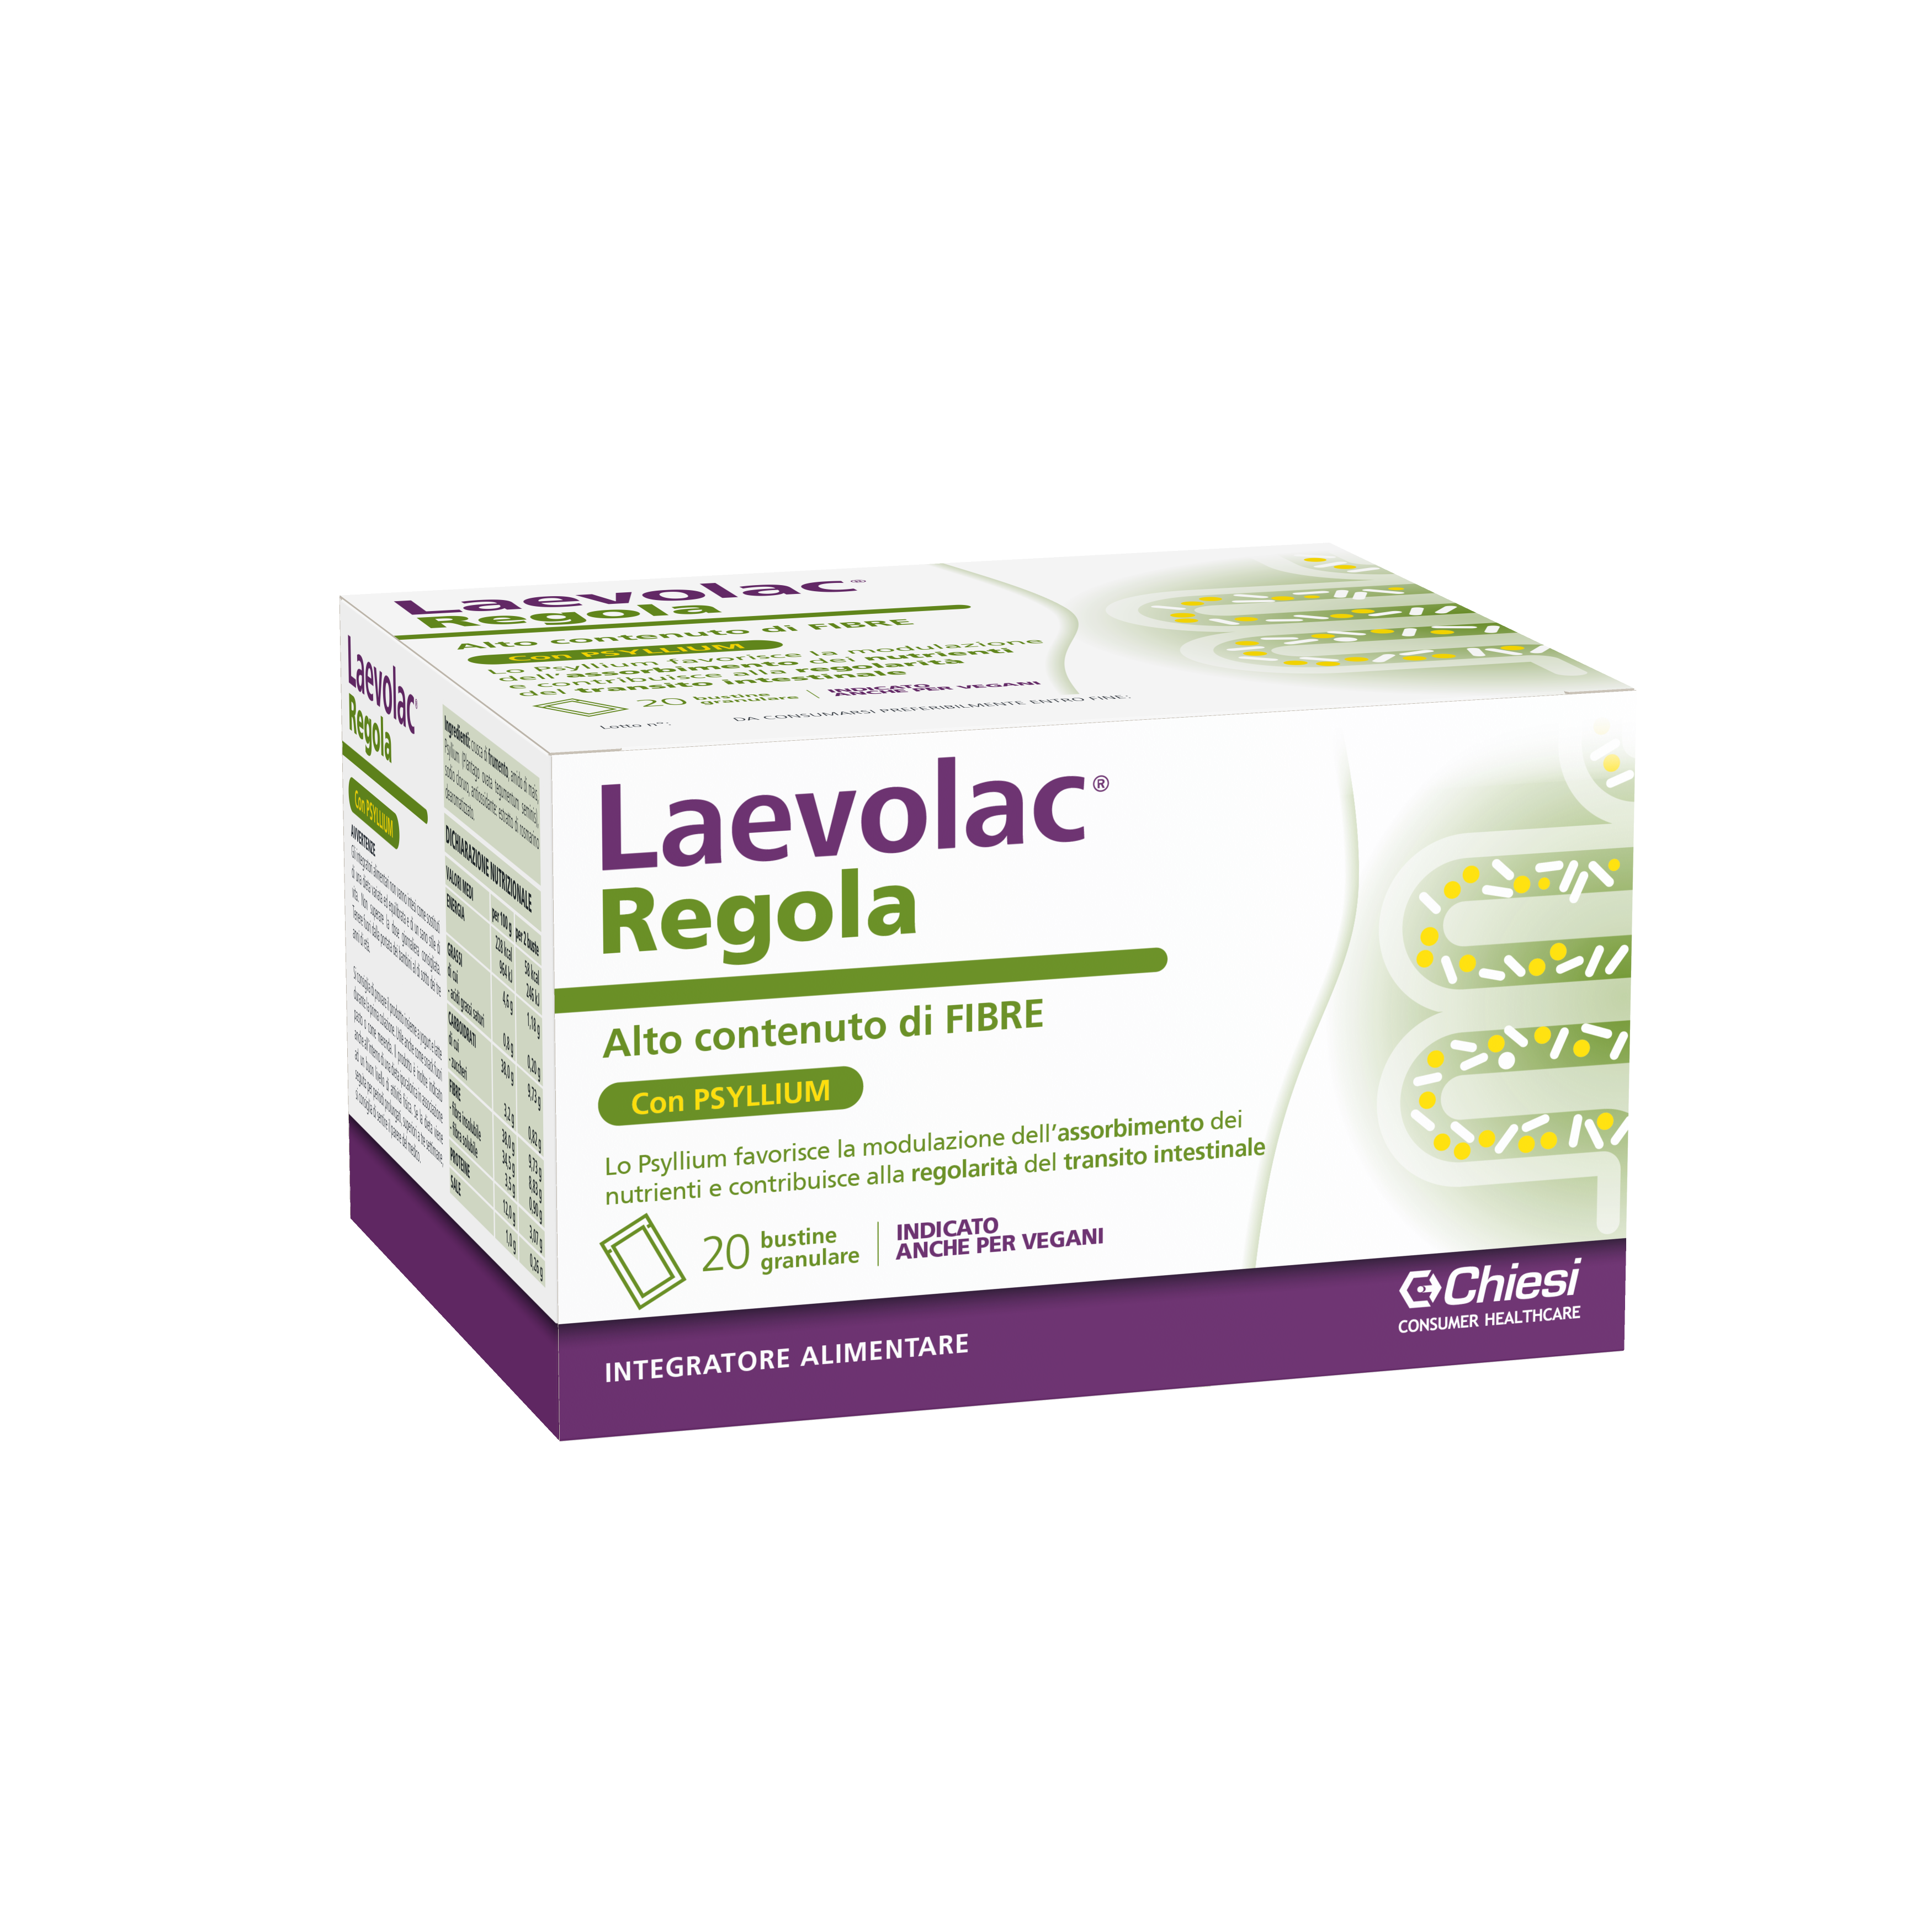 Immagine della confezione di Laevolac Regola, integratore di Chiesi Farmaceutici S.p.A.